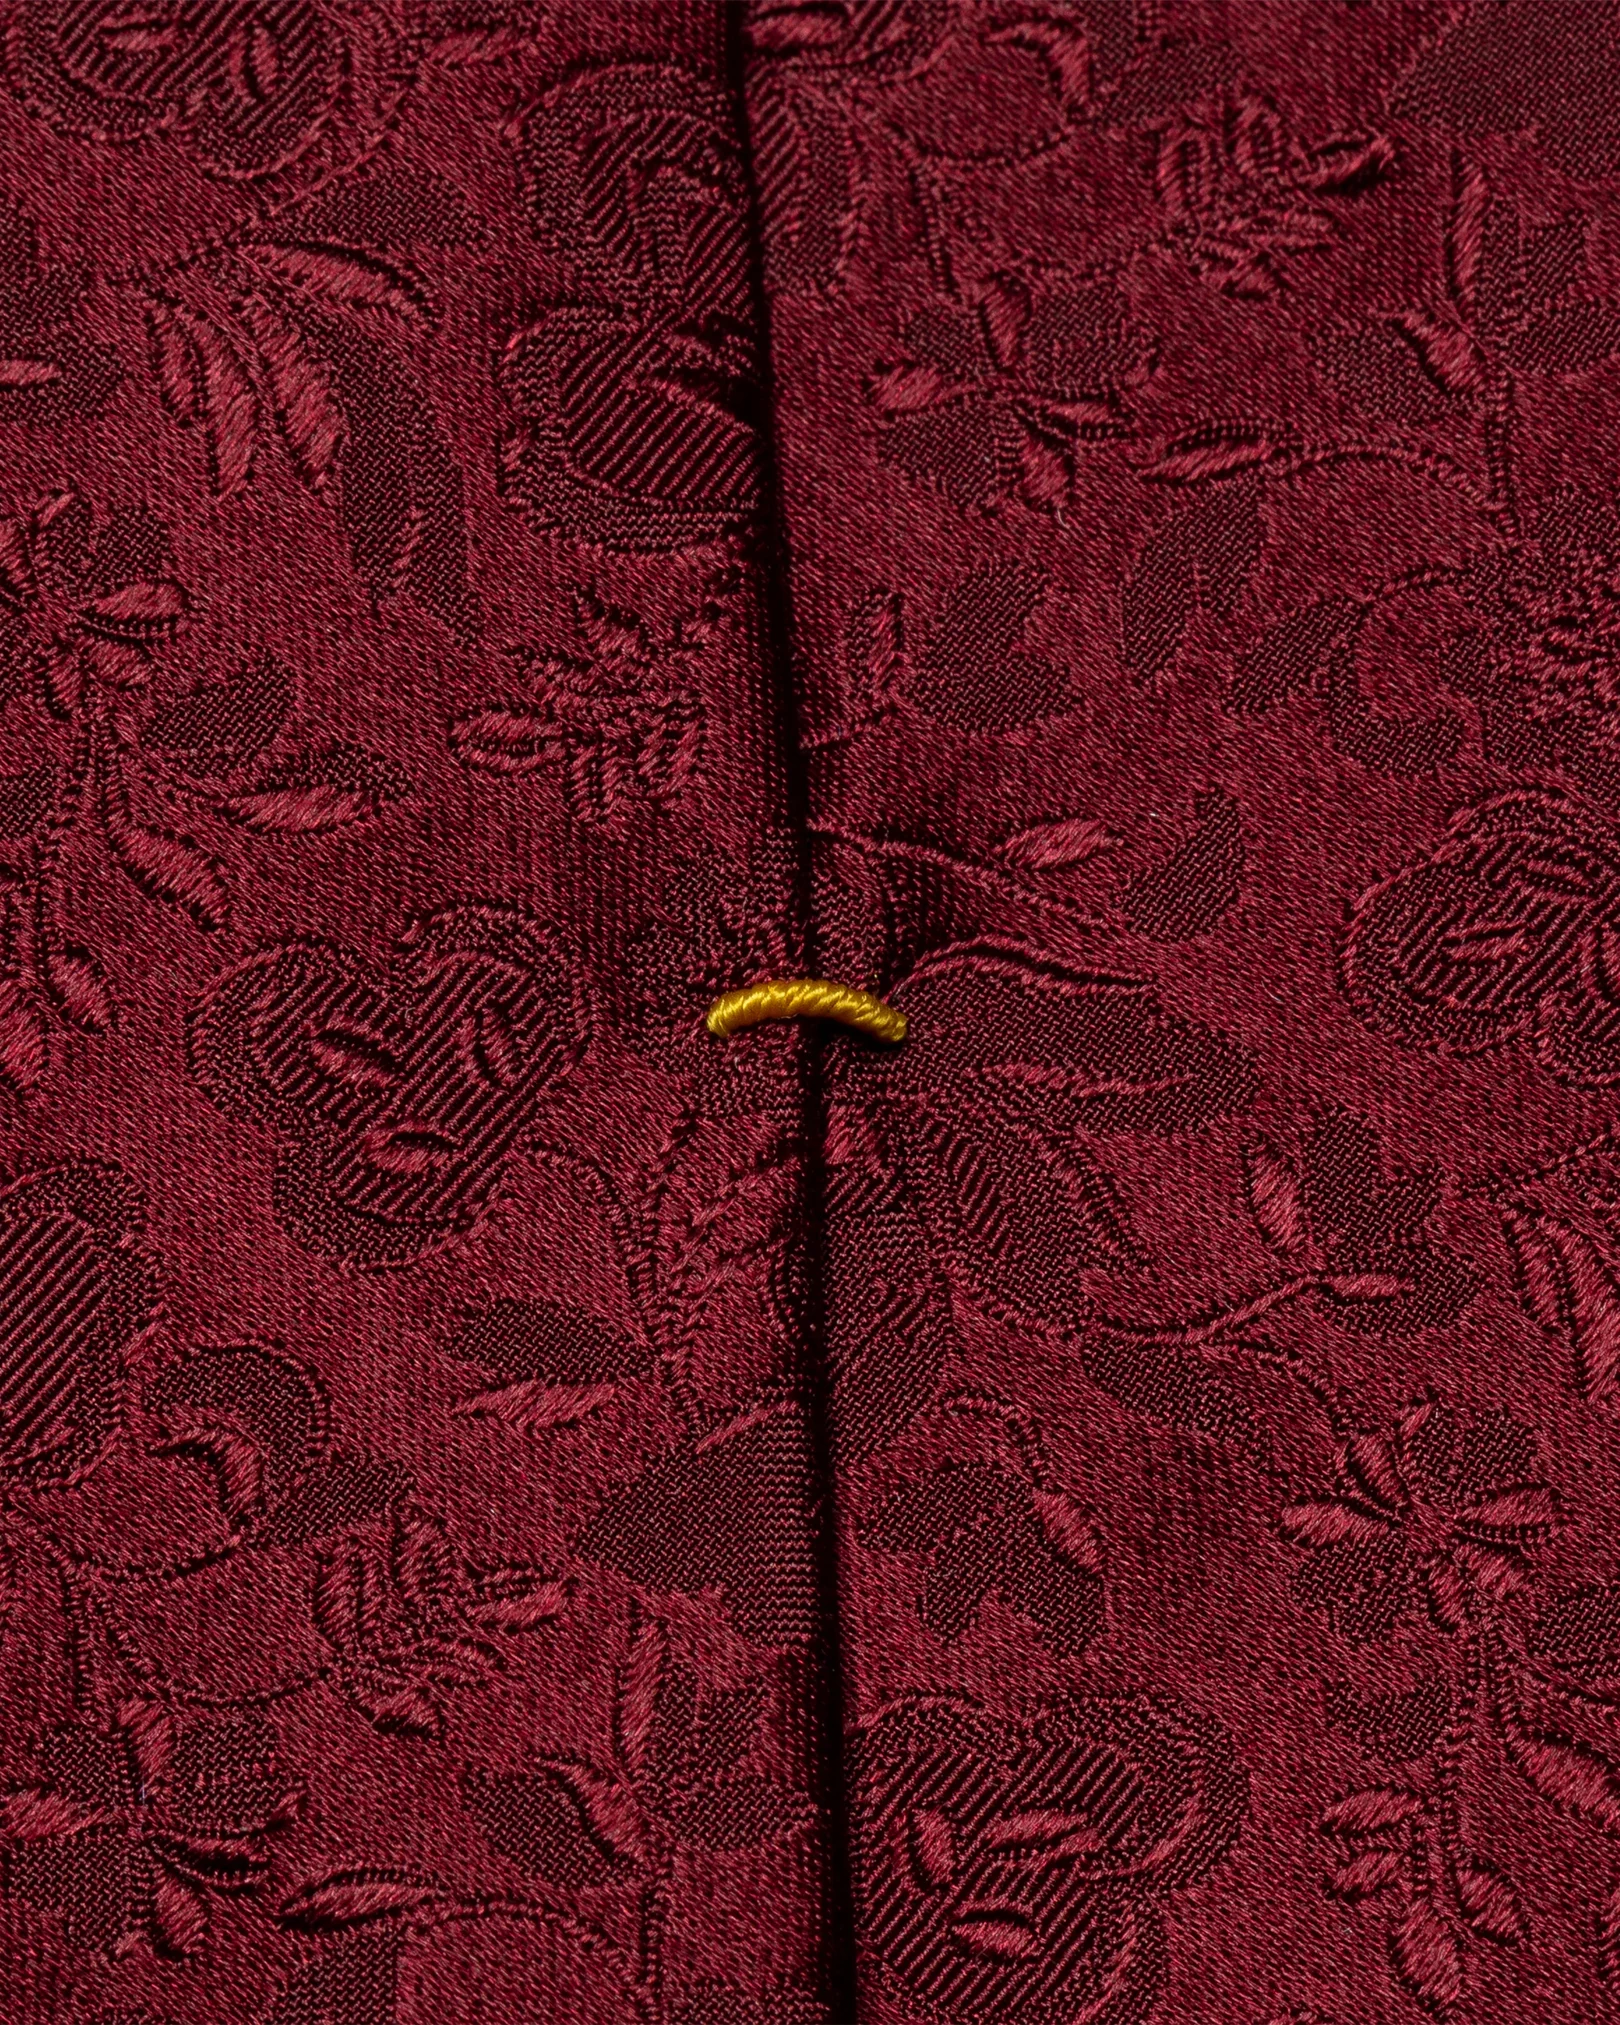 Eton - dark red jacquard tie